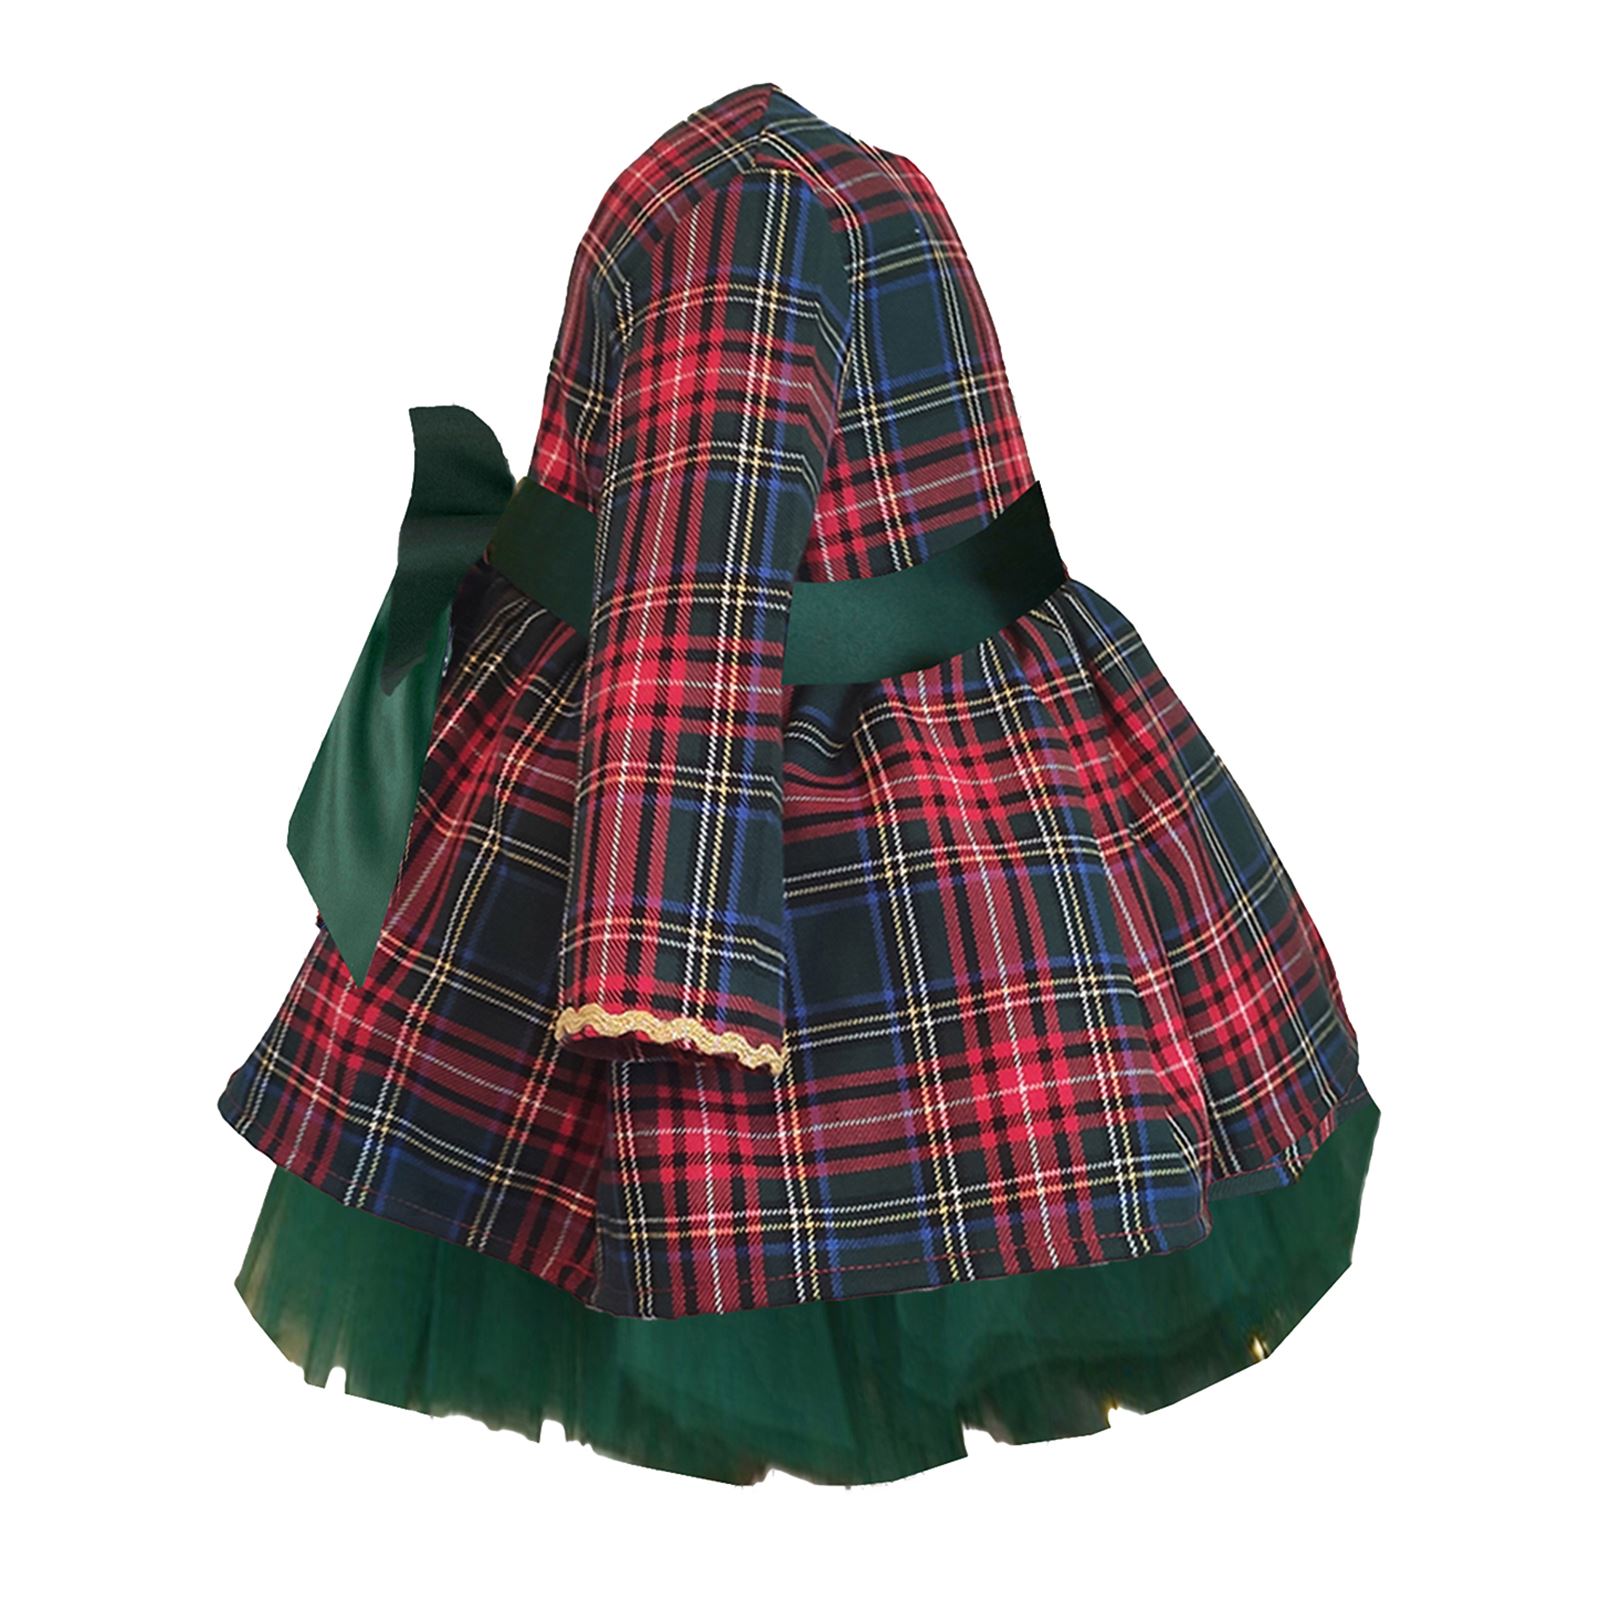 Shecco Babba Kız Çocuk Tütü Elbise Taç Takım Kırmızı Fiyonk 1-5 Yaş Yeşil